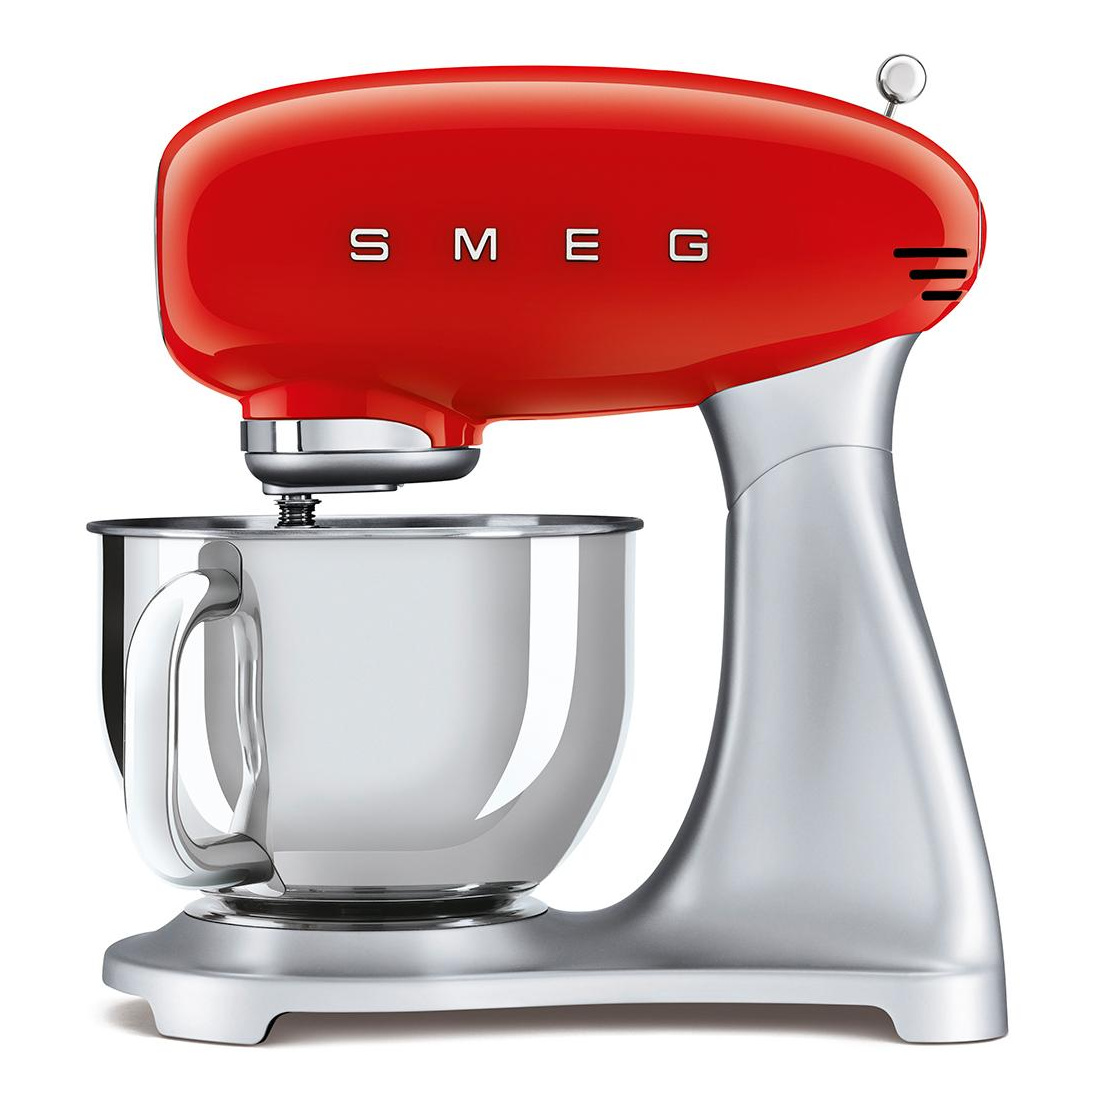 Smeg - SMF02 Küchenmaschine - rot/lackiert/BxHxT 40,2x37,8x22,1cm/10 Geschwindigkeits-Stufen mit Soft-Start von Smeg